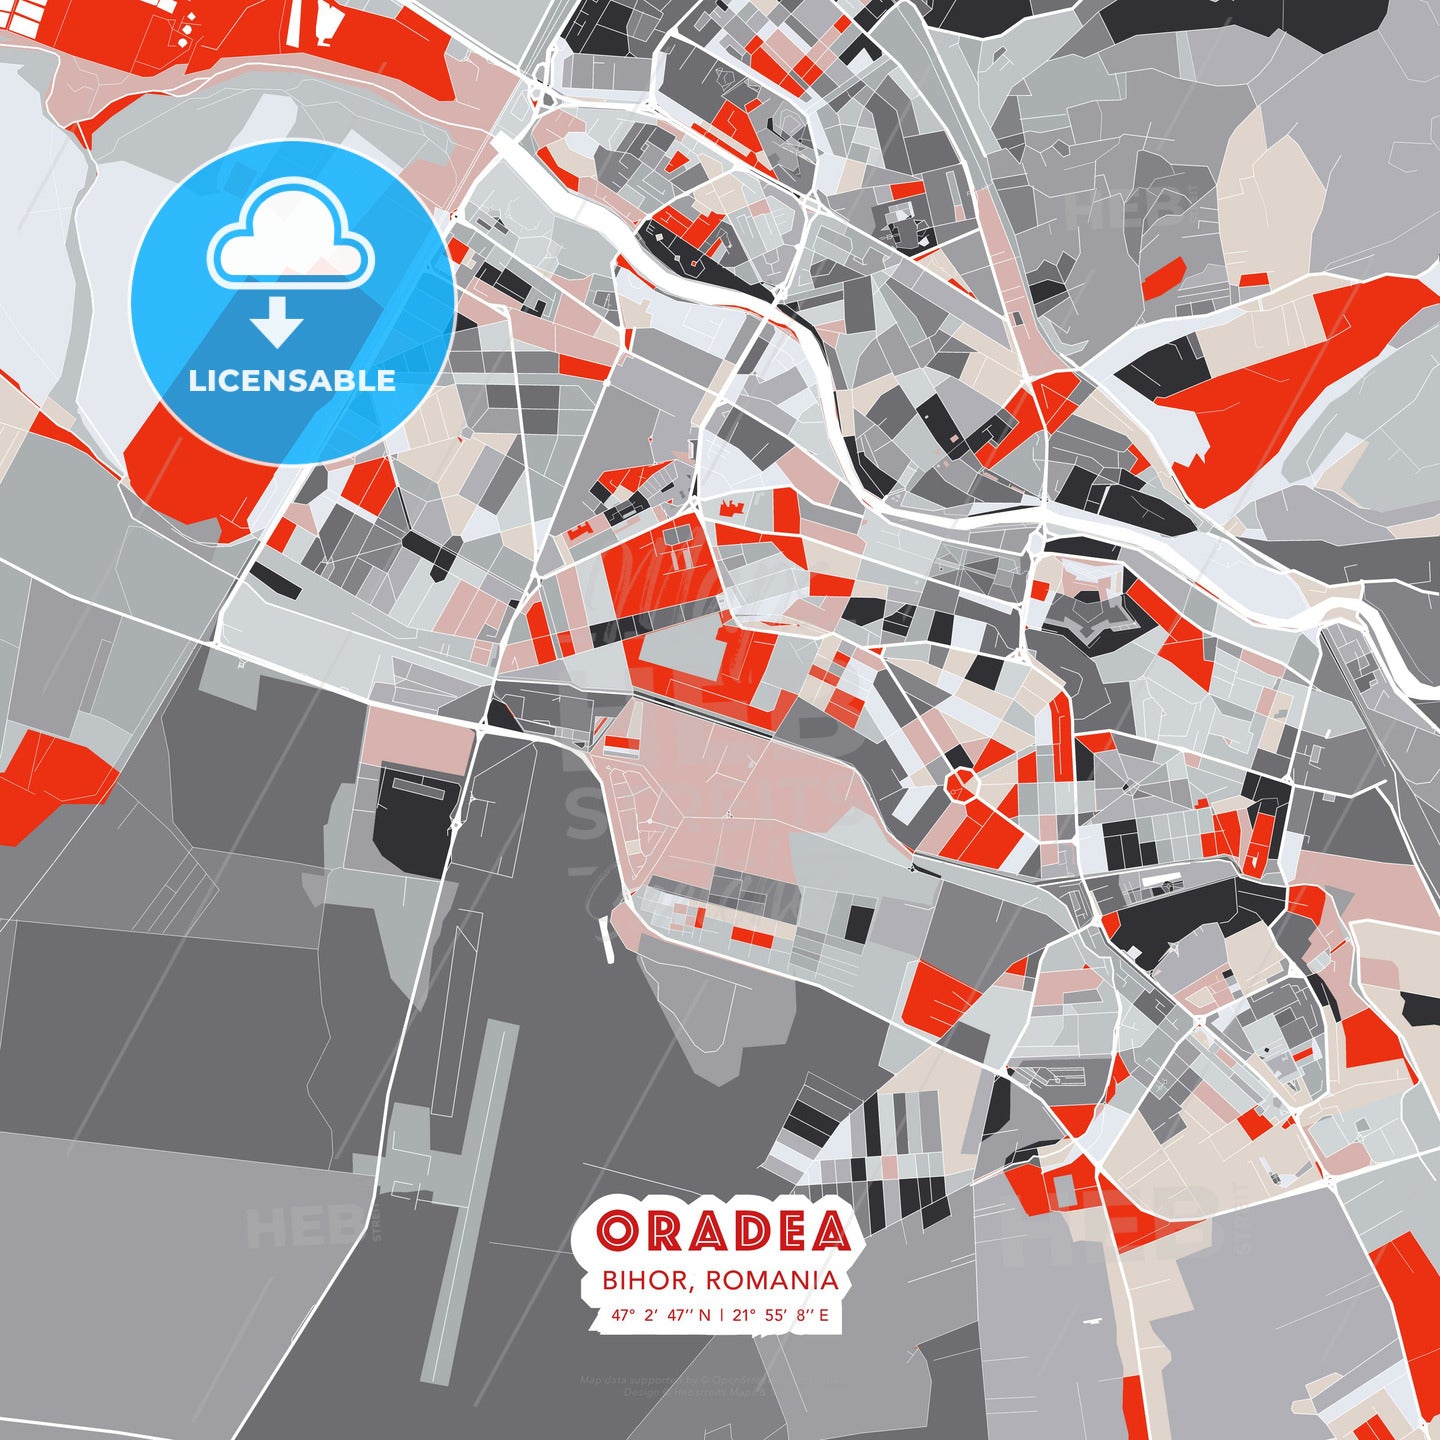 Oradea, Bihor, Romania, modern map - HEBSTREITS Sketches